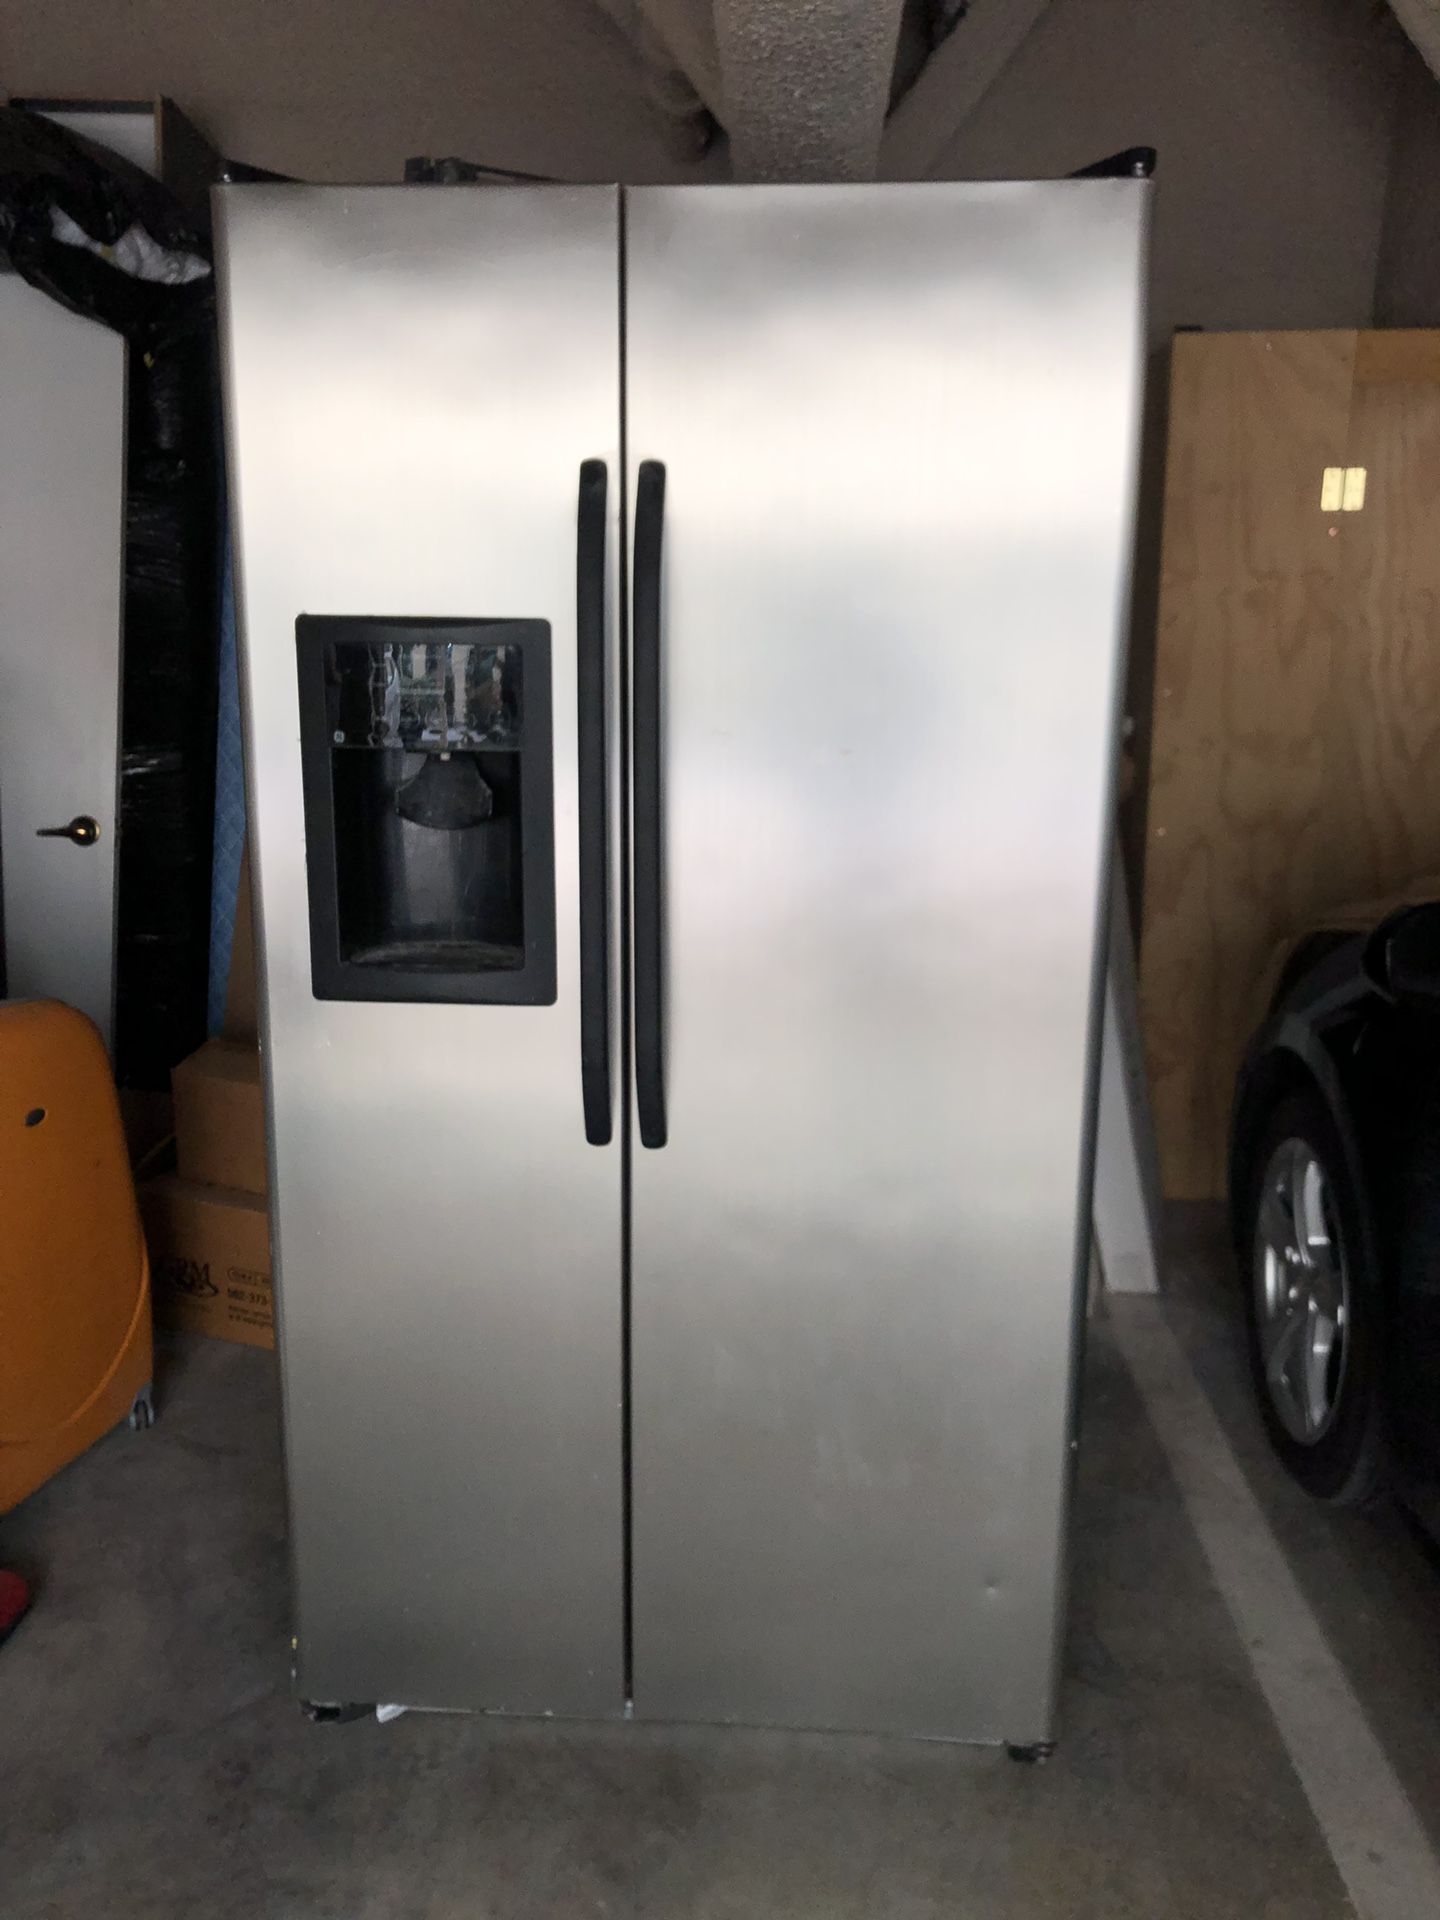 GE Double Door Refrigerator/Freezer with ice machine & water filter